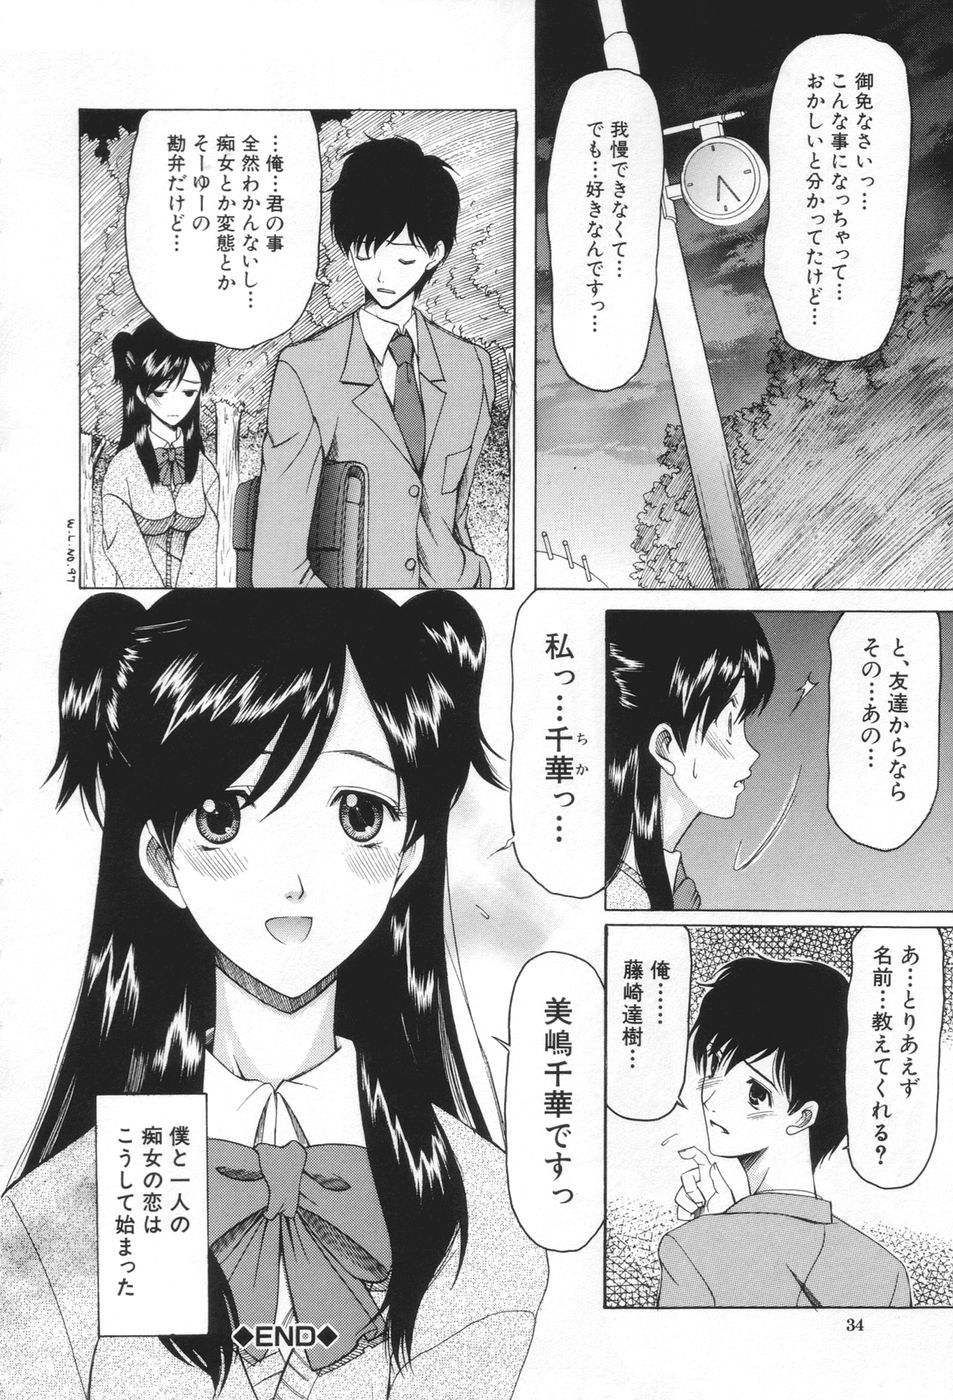 [Saki Urara] Chijo ga Koi shicha dame desu ka | May not &quot;Miss Pervert&quot; fall in love? [さきうらら] 痴女が恋しちゃダメですか